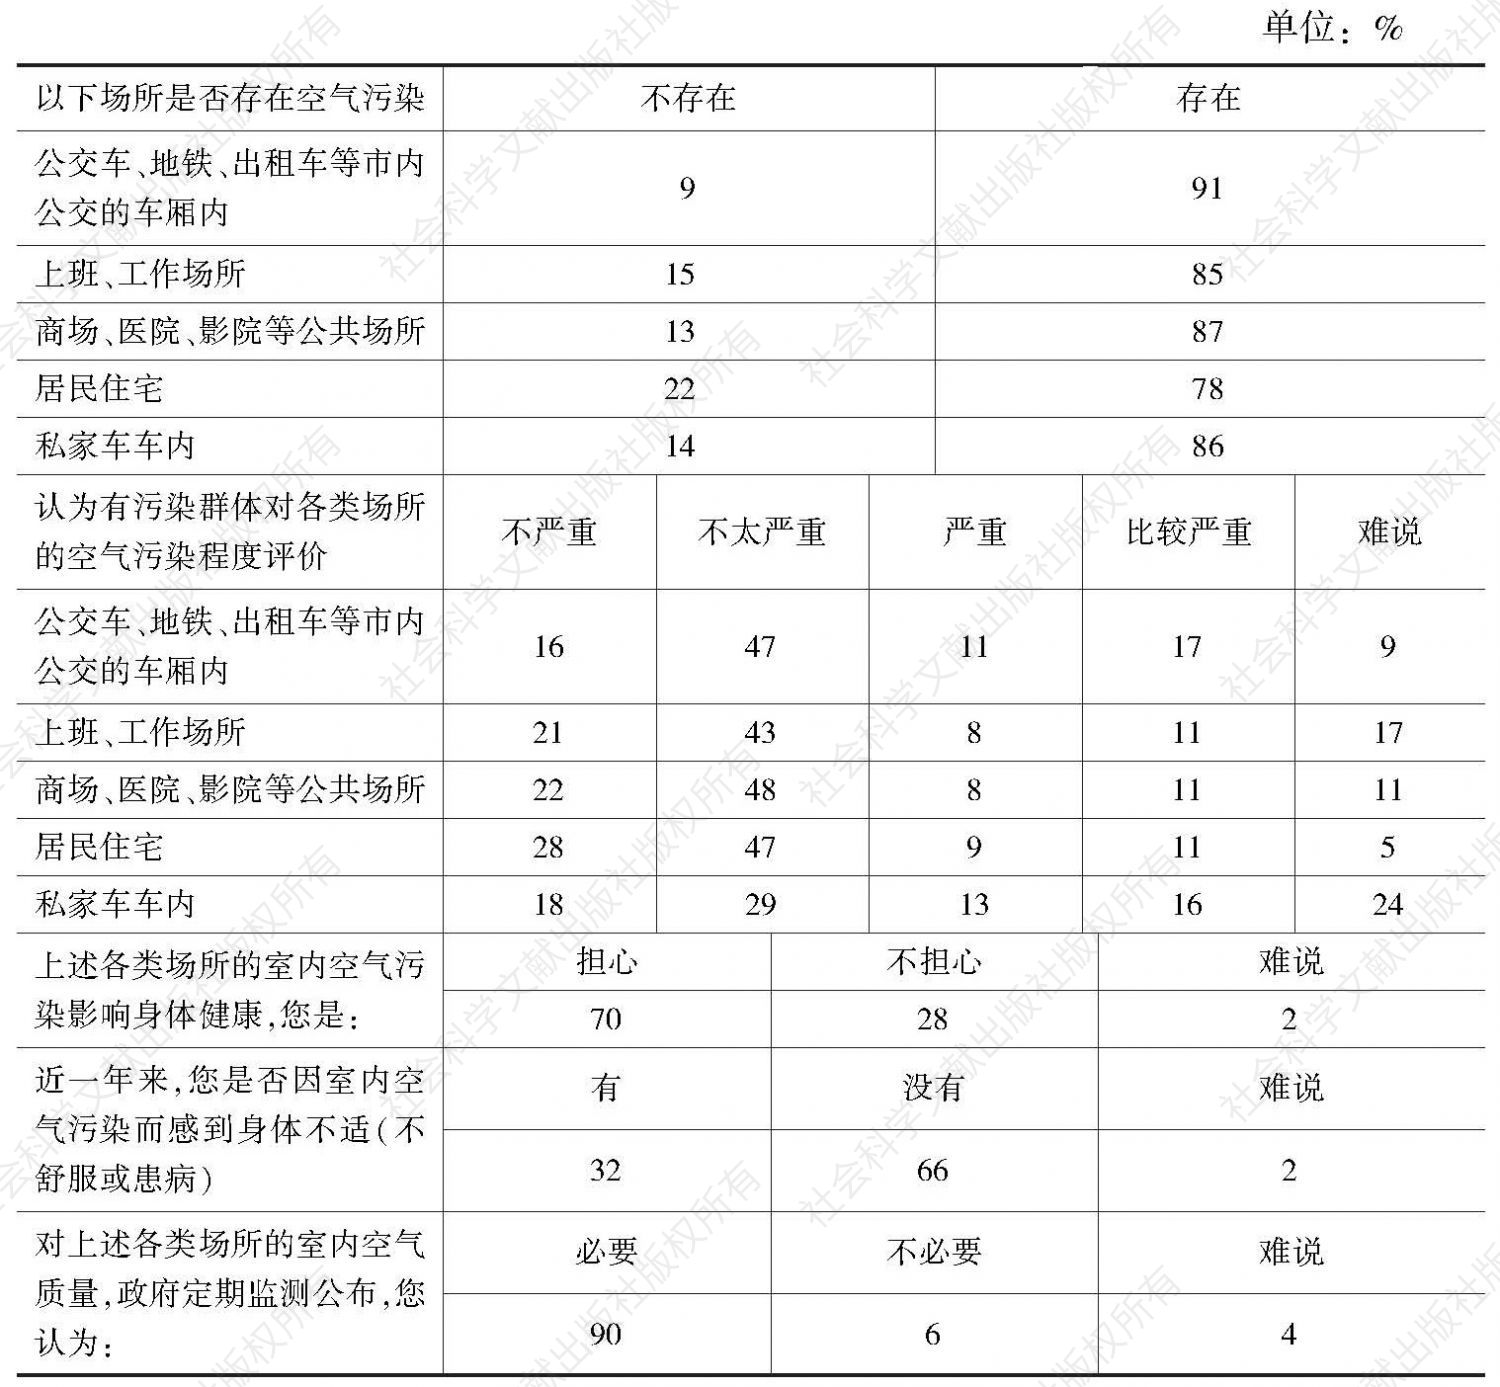 “室内空气污染状况广州市民评价”民调数据